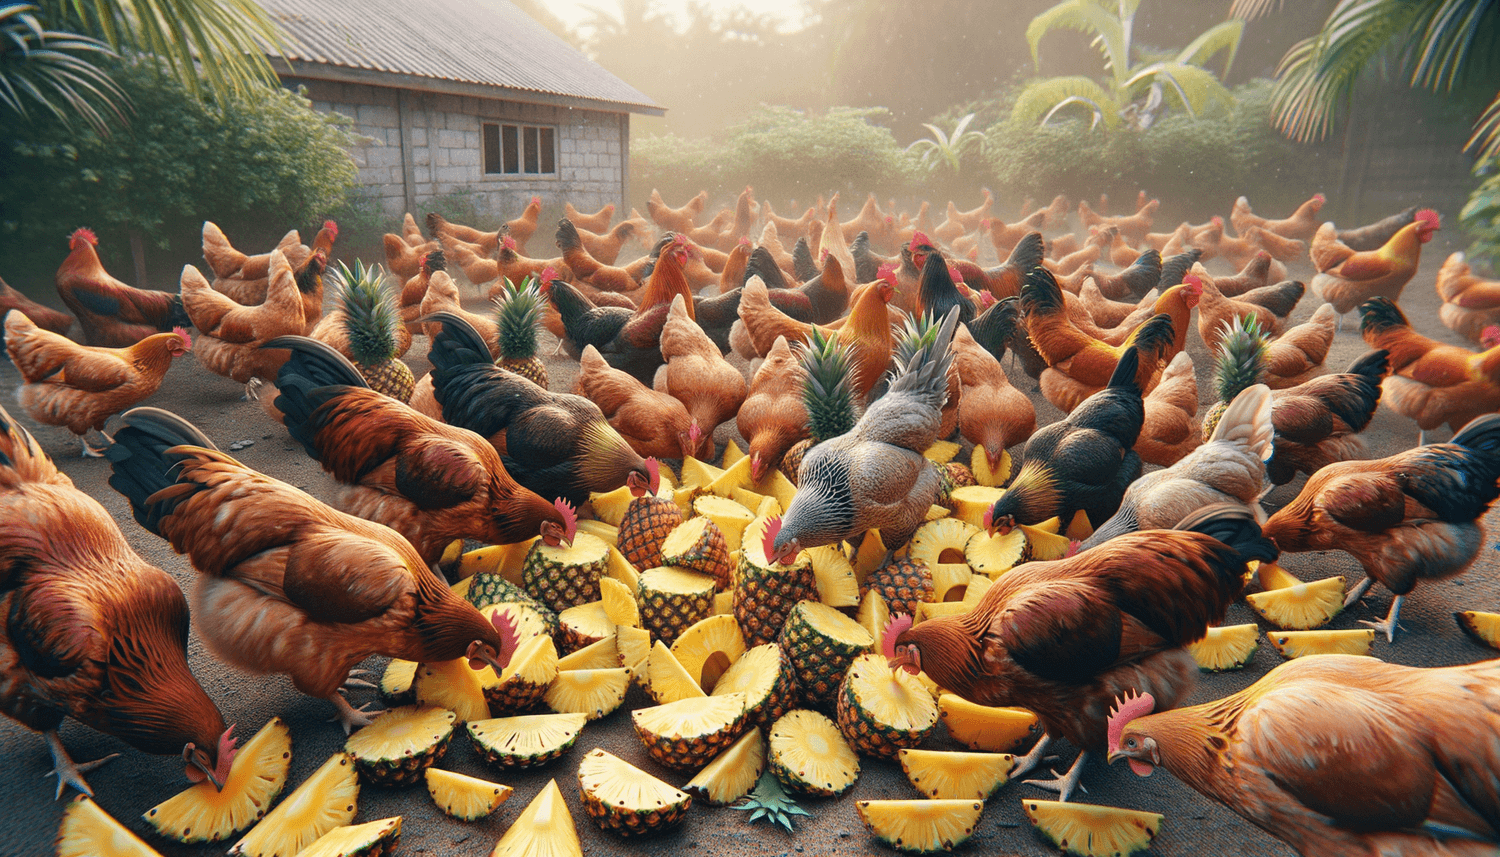 Can Chickens Eat Pineapple Peelings?